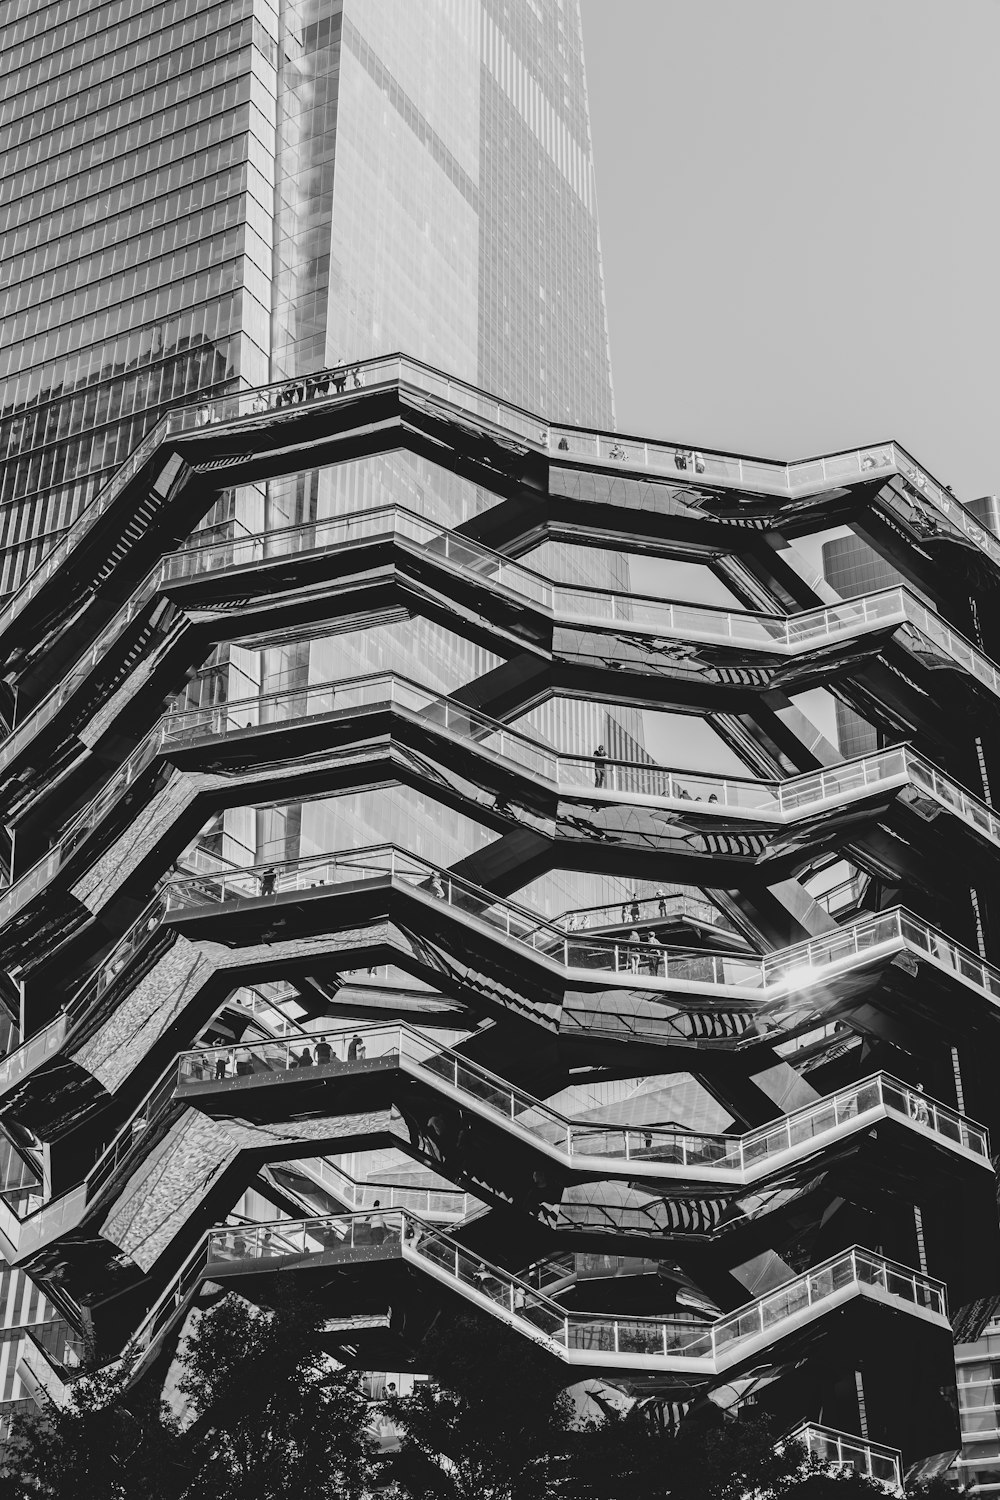 Photographie en niveaux de gris d’un bâtiment noir et gris